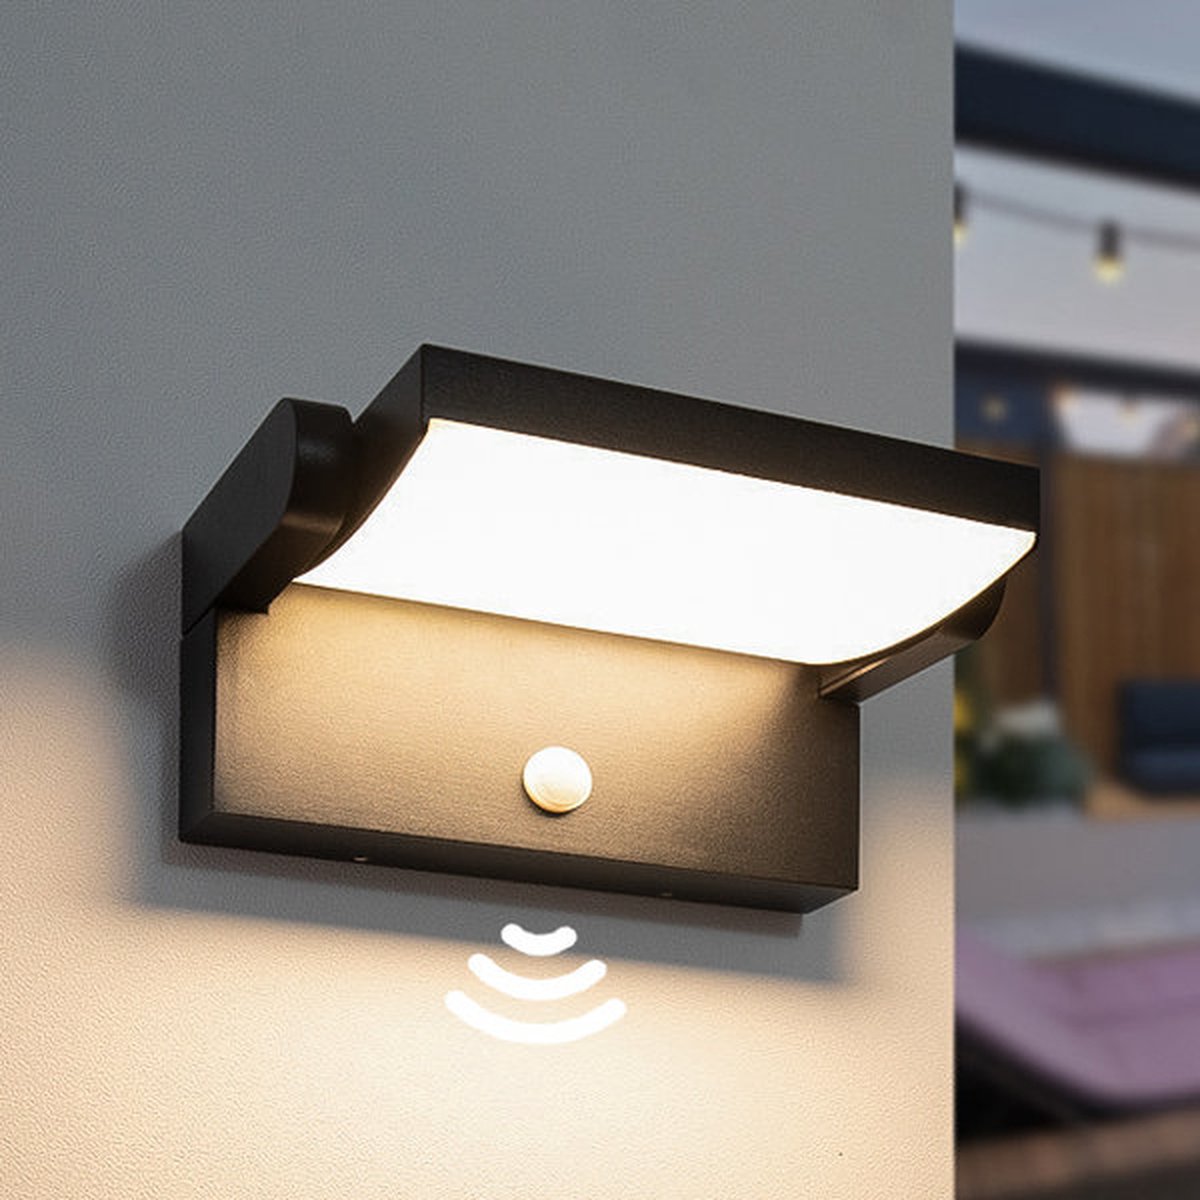 Verstelbare wandlamp Berlin met sensor - zwart | Ideale tuinlampen voor aan de muur, wand of schutting